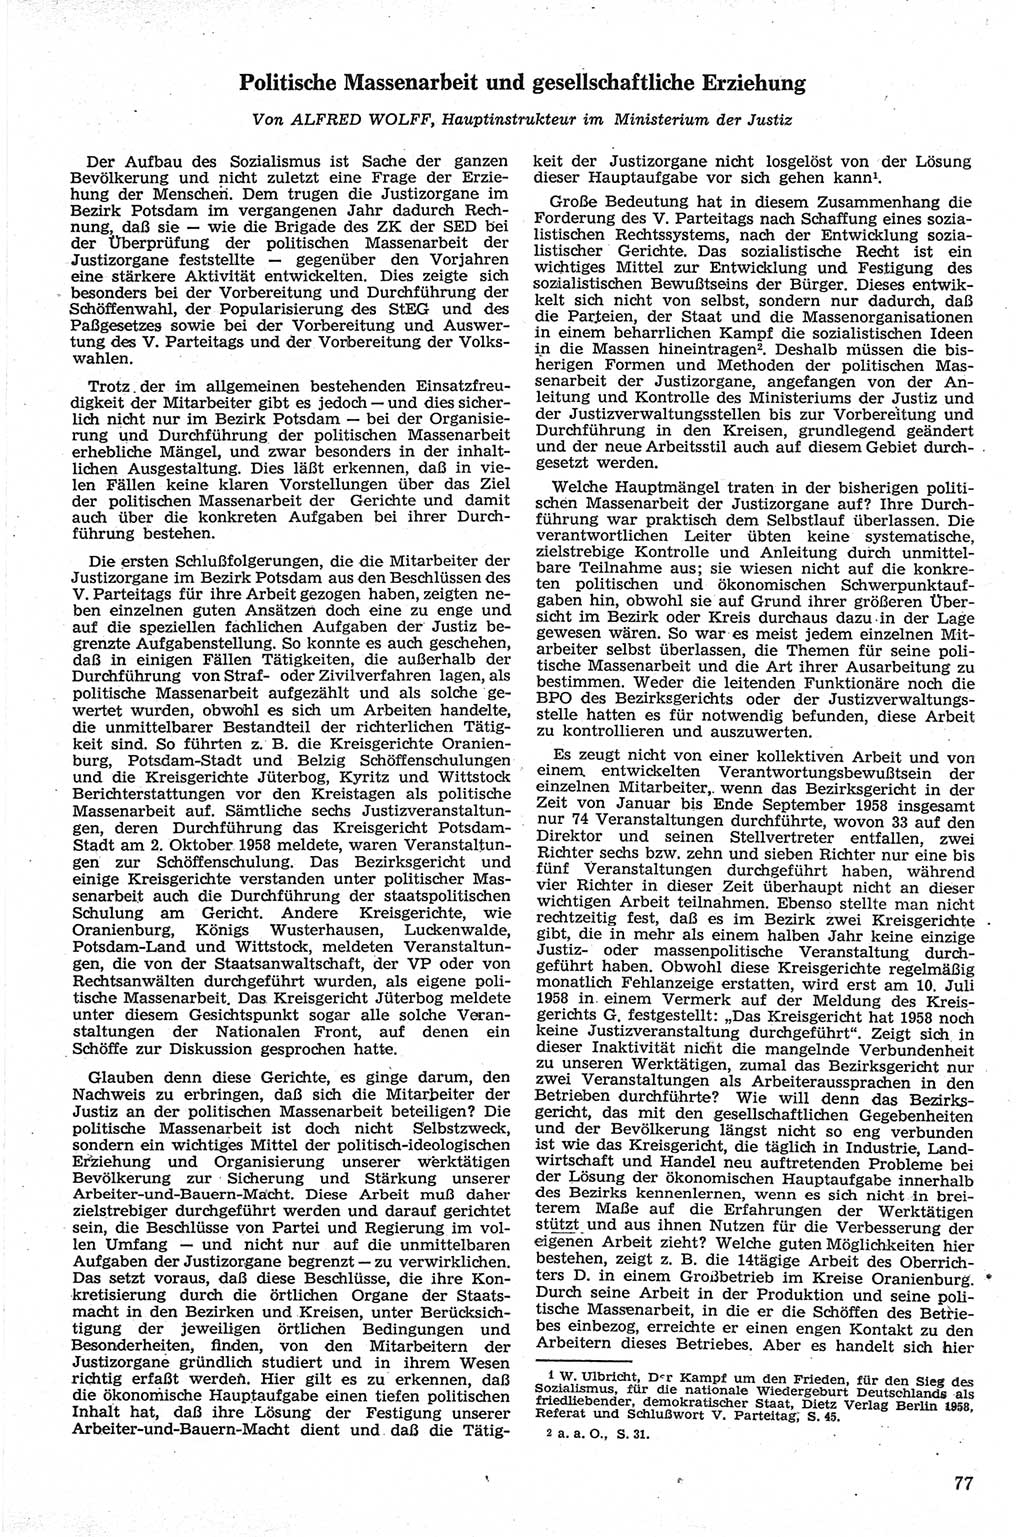 Neue Justiz (NJ), Zeitschrift für Recht und Rechtswissenschaft [Deutsche Demokratische Republik (DDR)], 13. Jahrgang 1959, Seite 77 (NJ DDR 1959, S. 77)